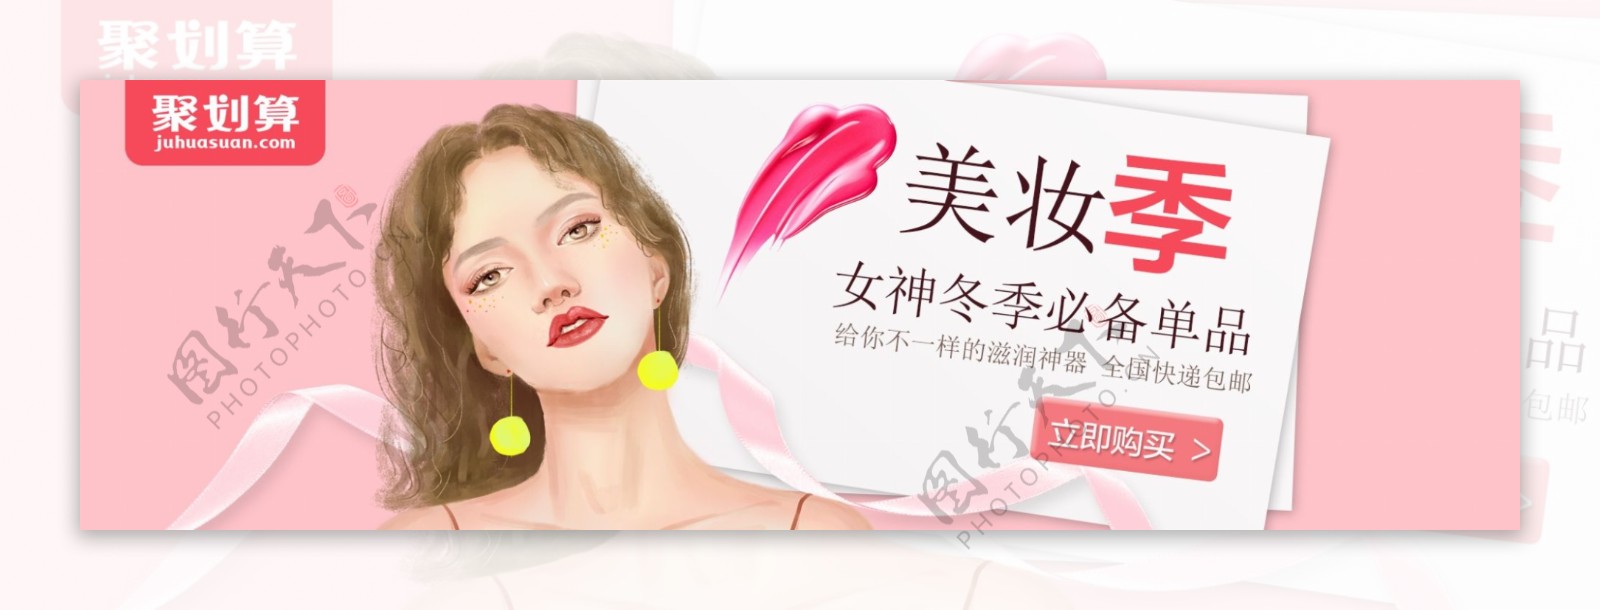 化妆品促销淘宝banner